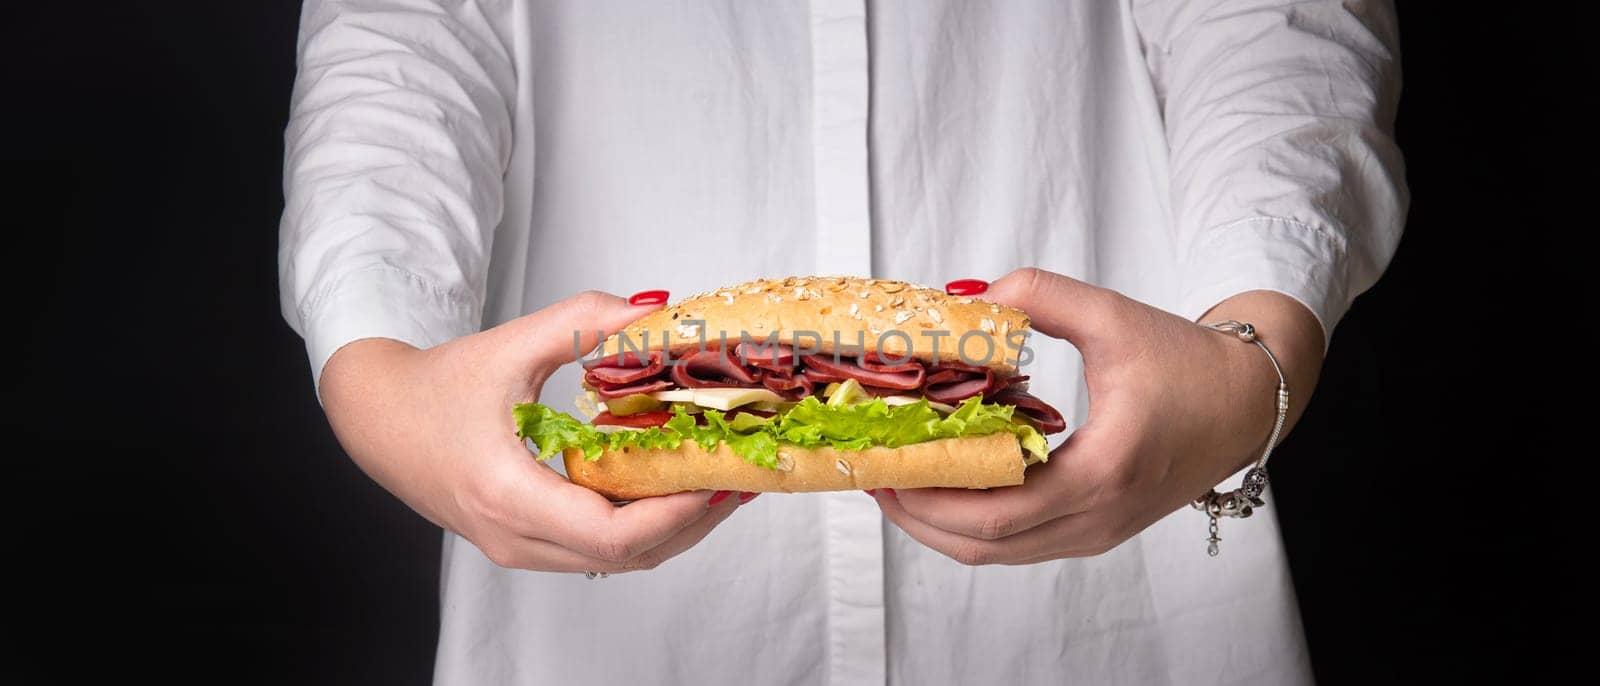 sandwich in women's hands on a black background.